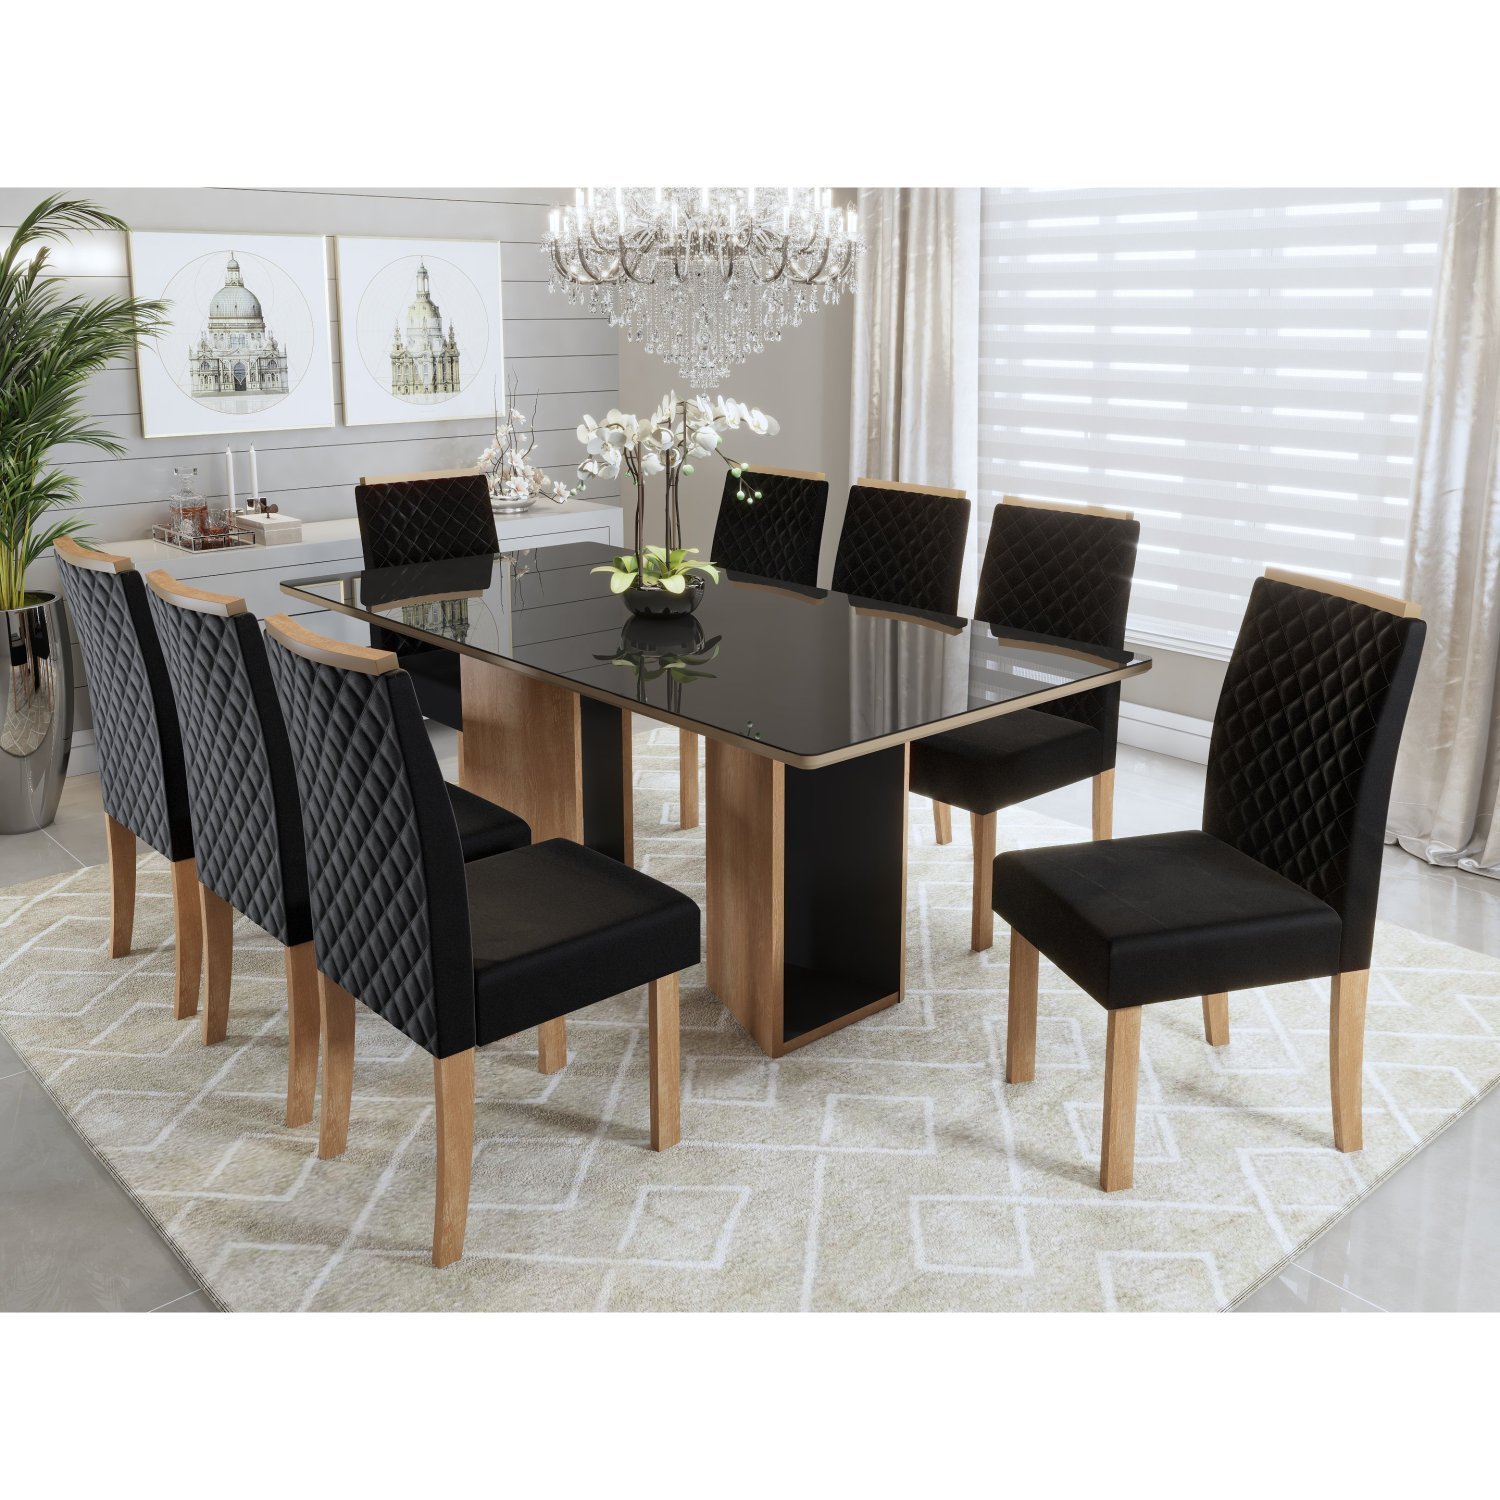 Conjunto Sala de Jantar Mesa Ayla 200cm Tampo Vidro/MDF com 8 Cadeiras Elegance Sonetto Móveis